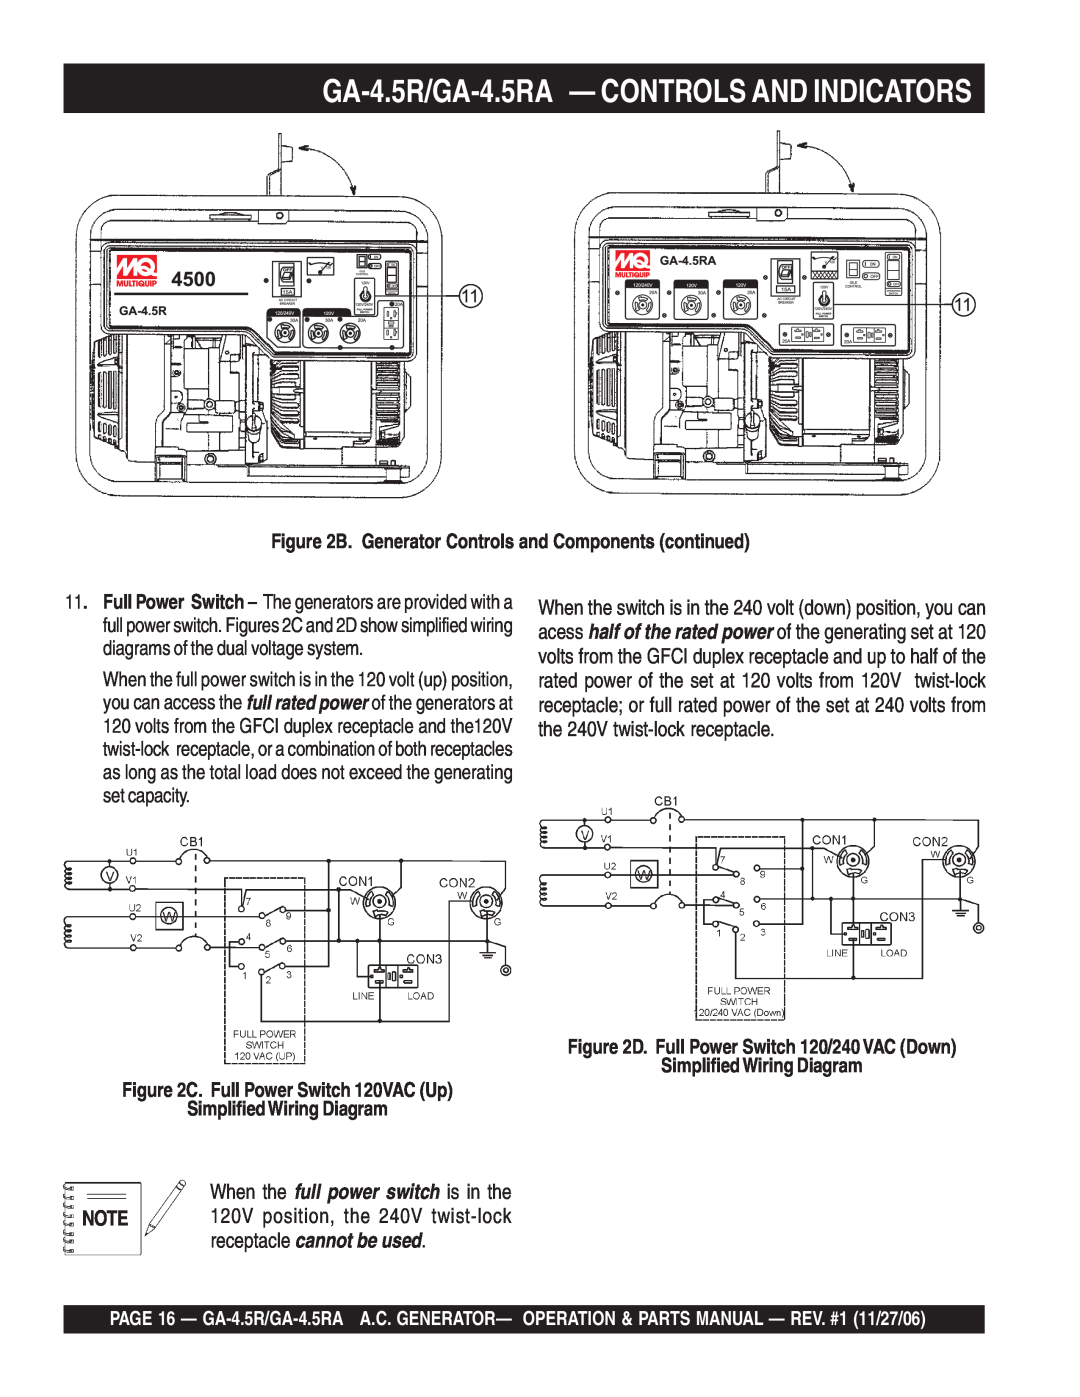 Multiquip GA4.5RA manual GA-4.5R/GA-4.5RA - CONTROLS AND INDICATORS, B. Generator Controls and Components continued 